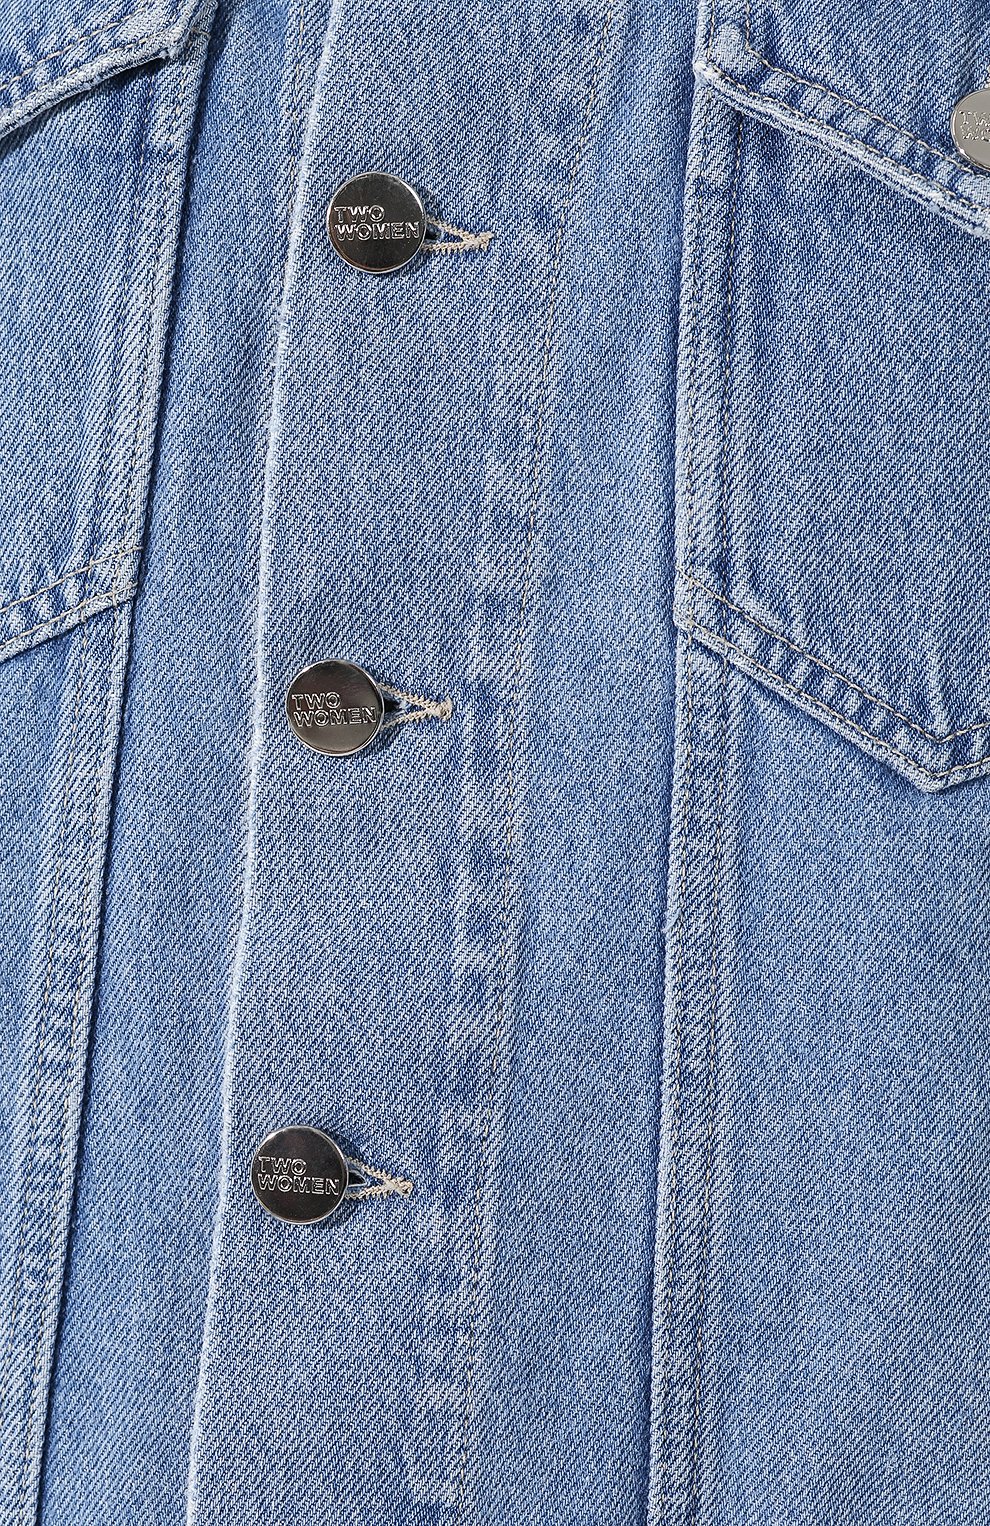 Женская джинсовая куртка TWO WOMEN IN THE WORLD голубого цвета, арт. F0RTUNE/UXIC6 | Фото 5 (Кросс-КТ: Куртка, Деним; Материал внешний: Хлопок, Деним; Рукава: 3/4; Длина (верхняя одежда): Короткие)